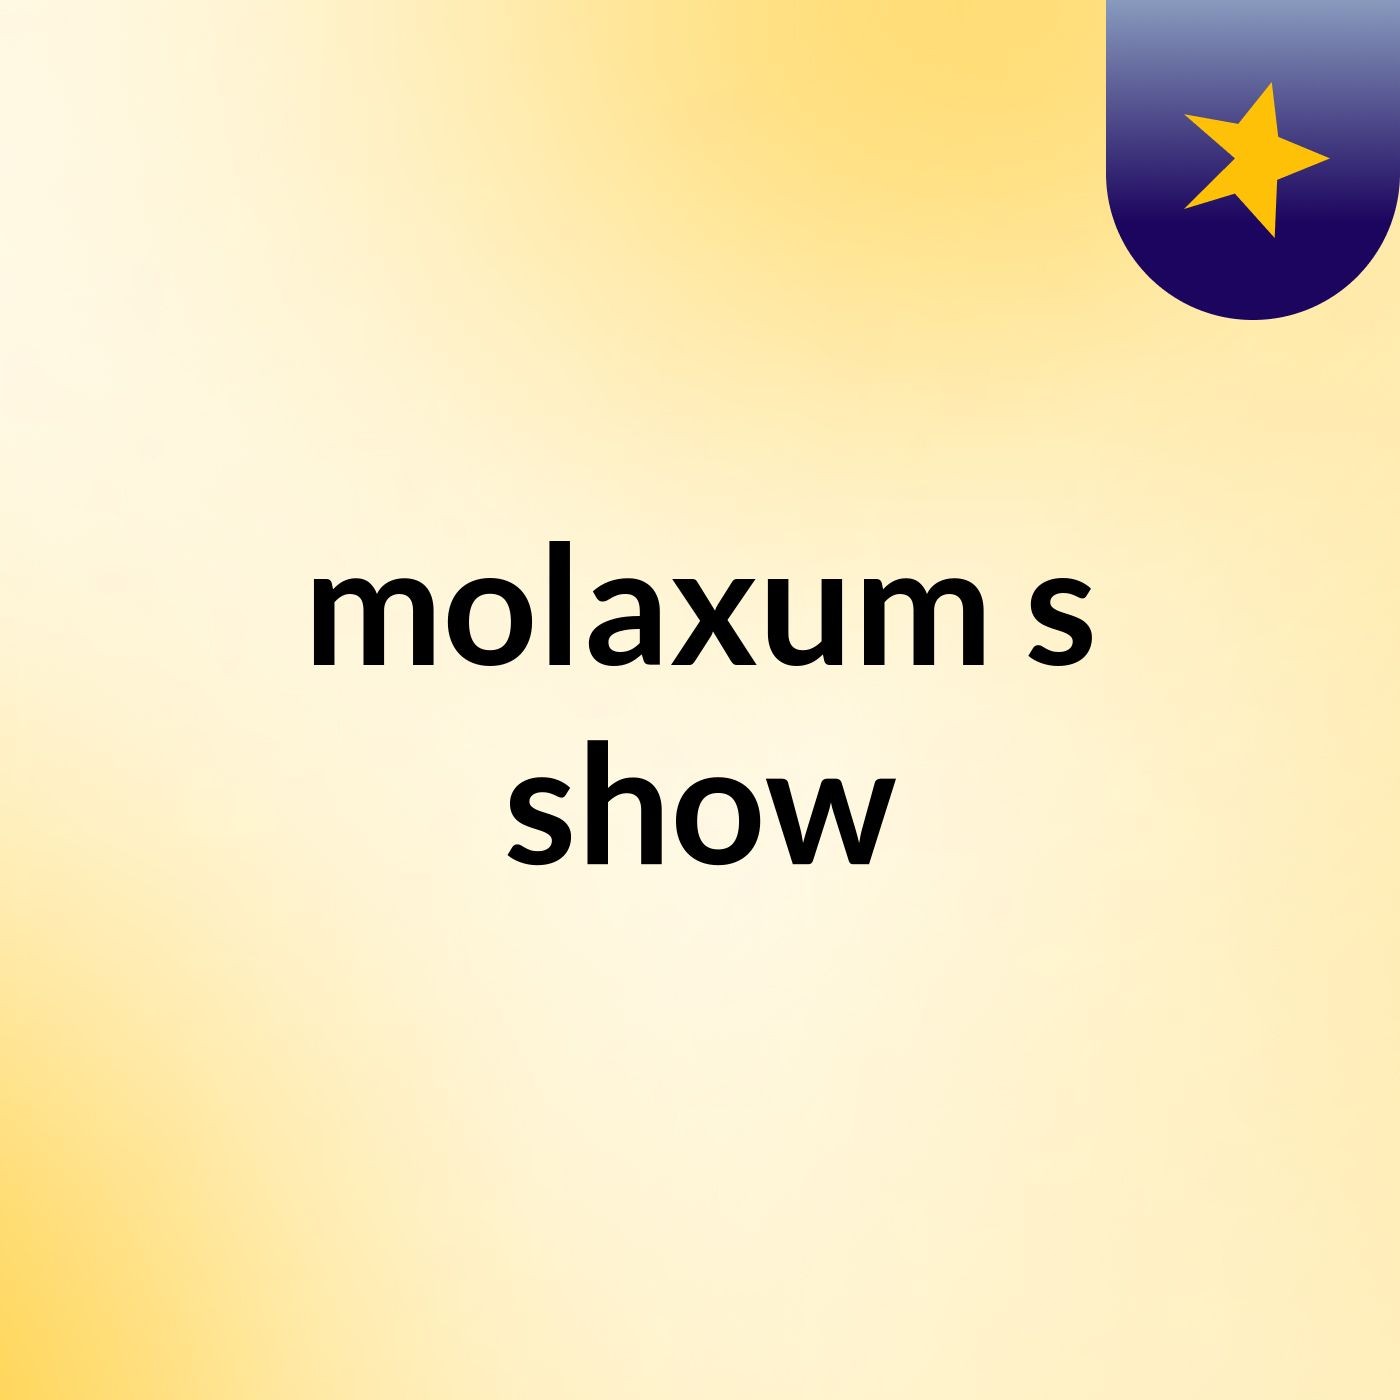 molaxum's show